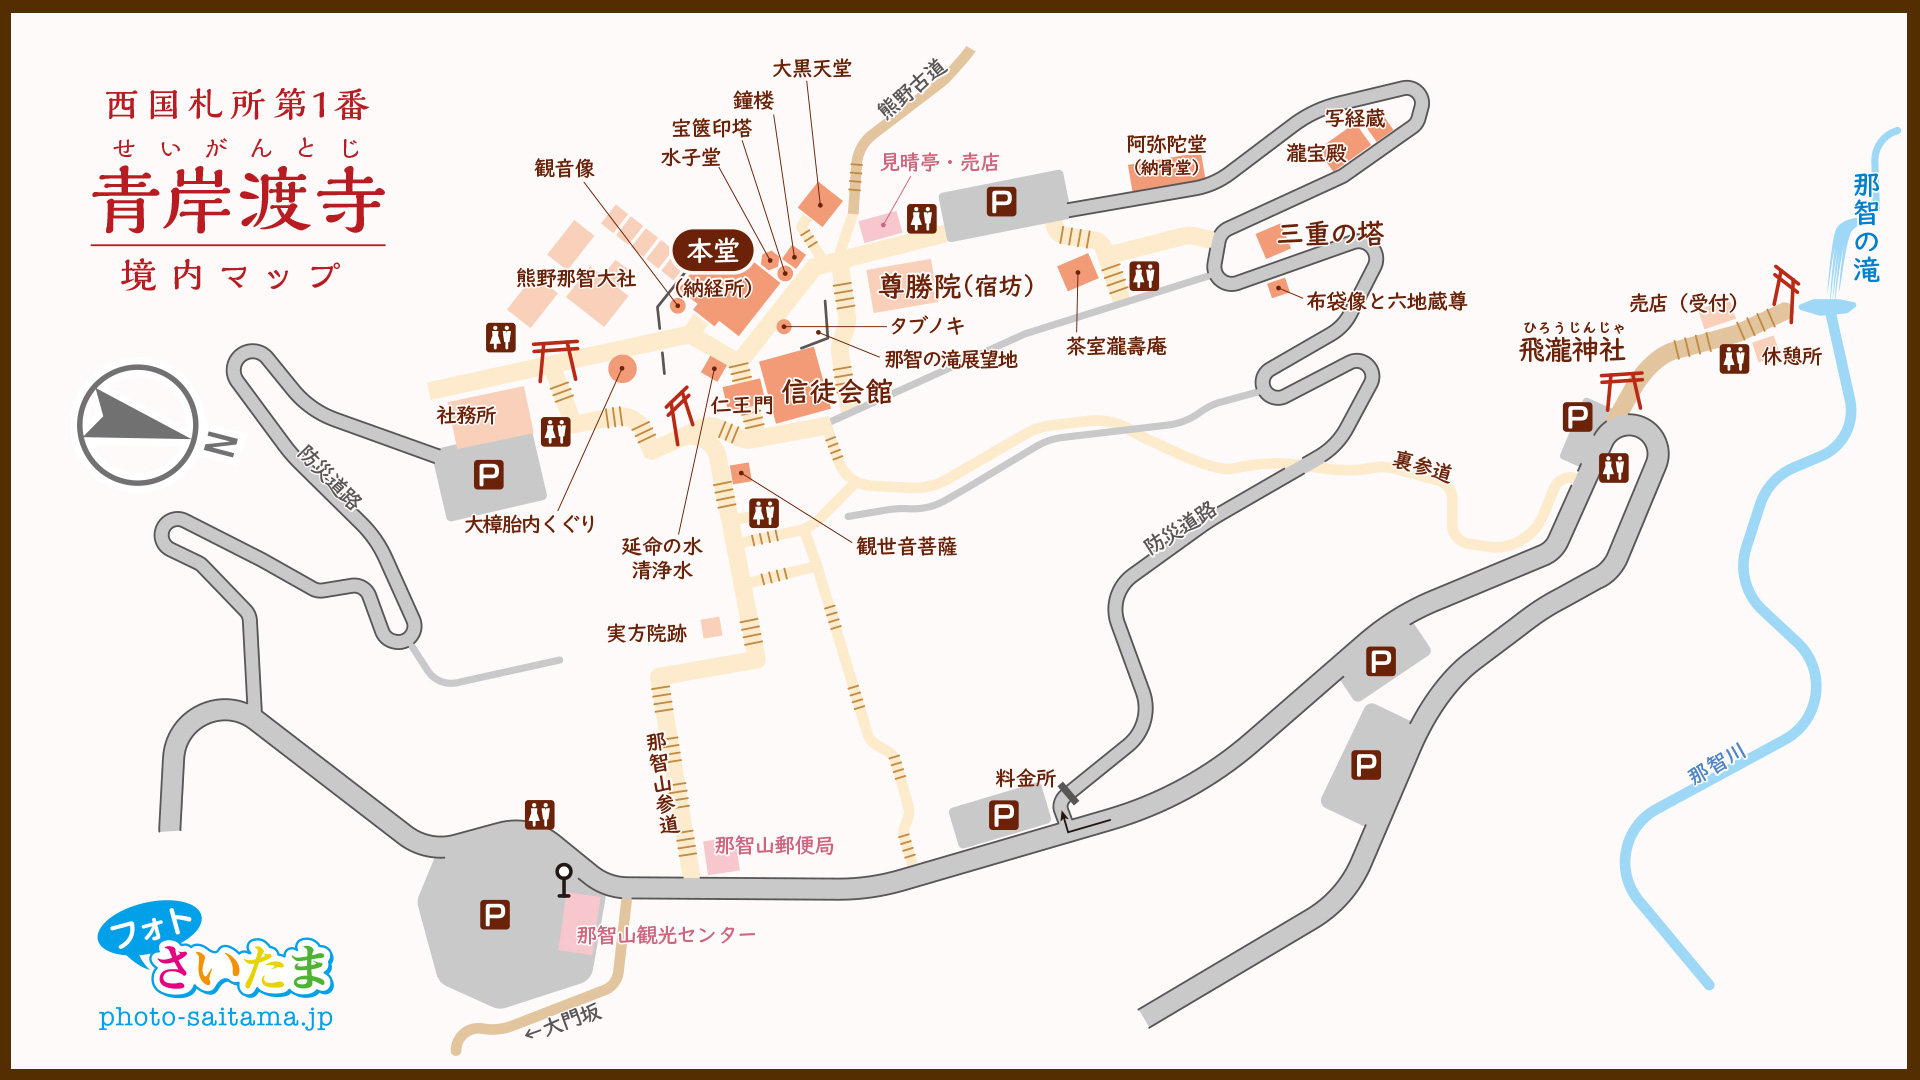 西国札所 第１番【那智山・青岸渡寺】 境内マップ| フォトさいたま